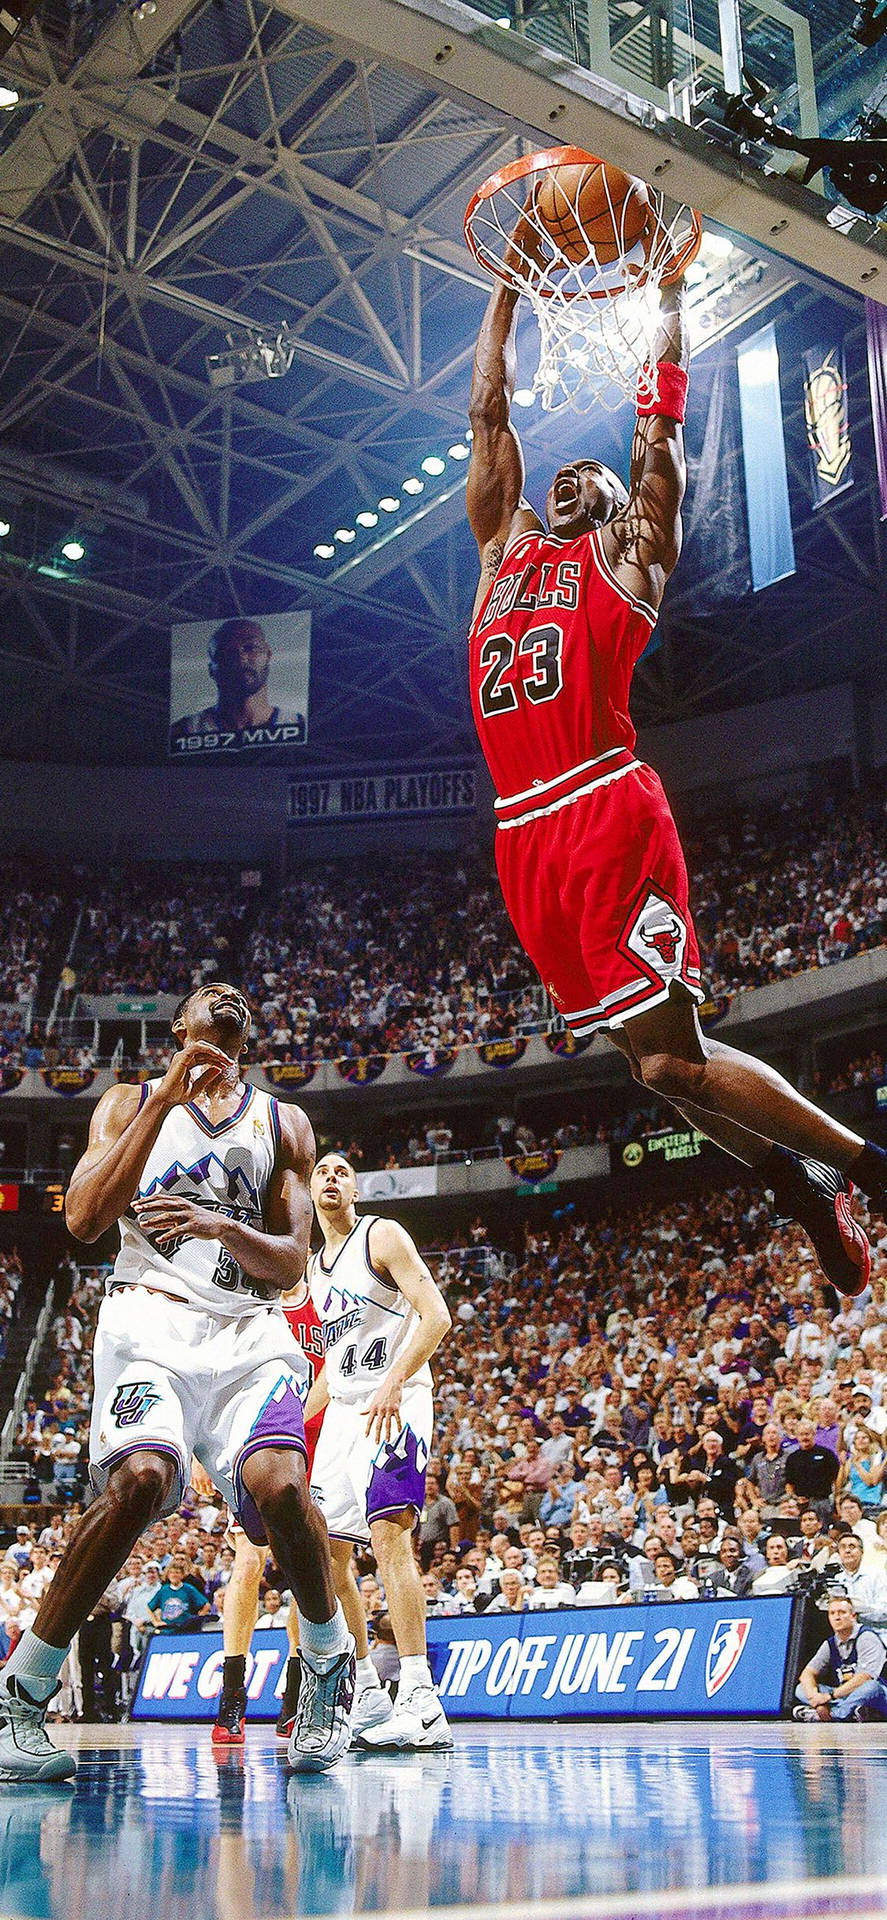 Nba Iphone Michael Jordan 1998 Nba Finals